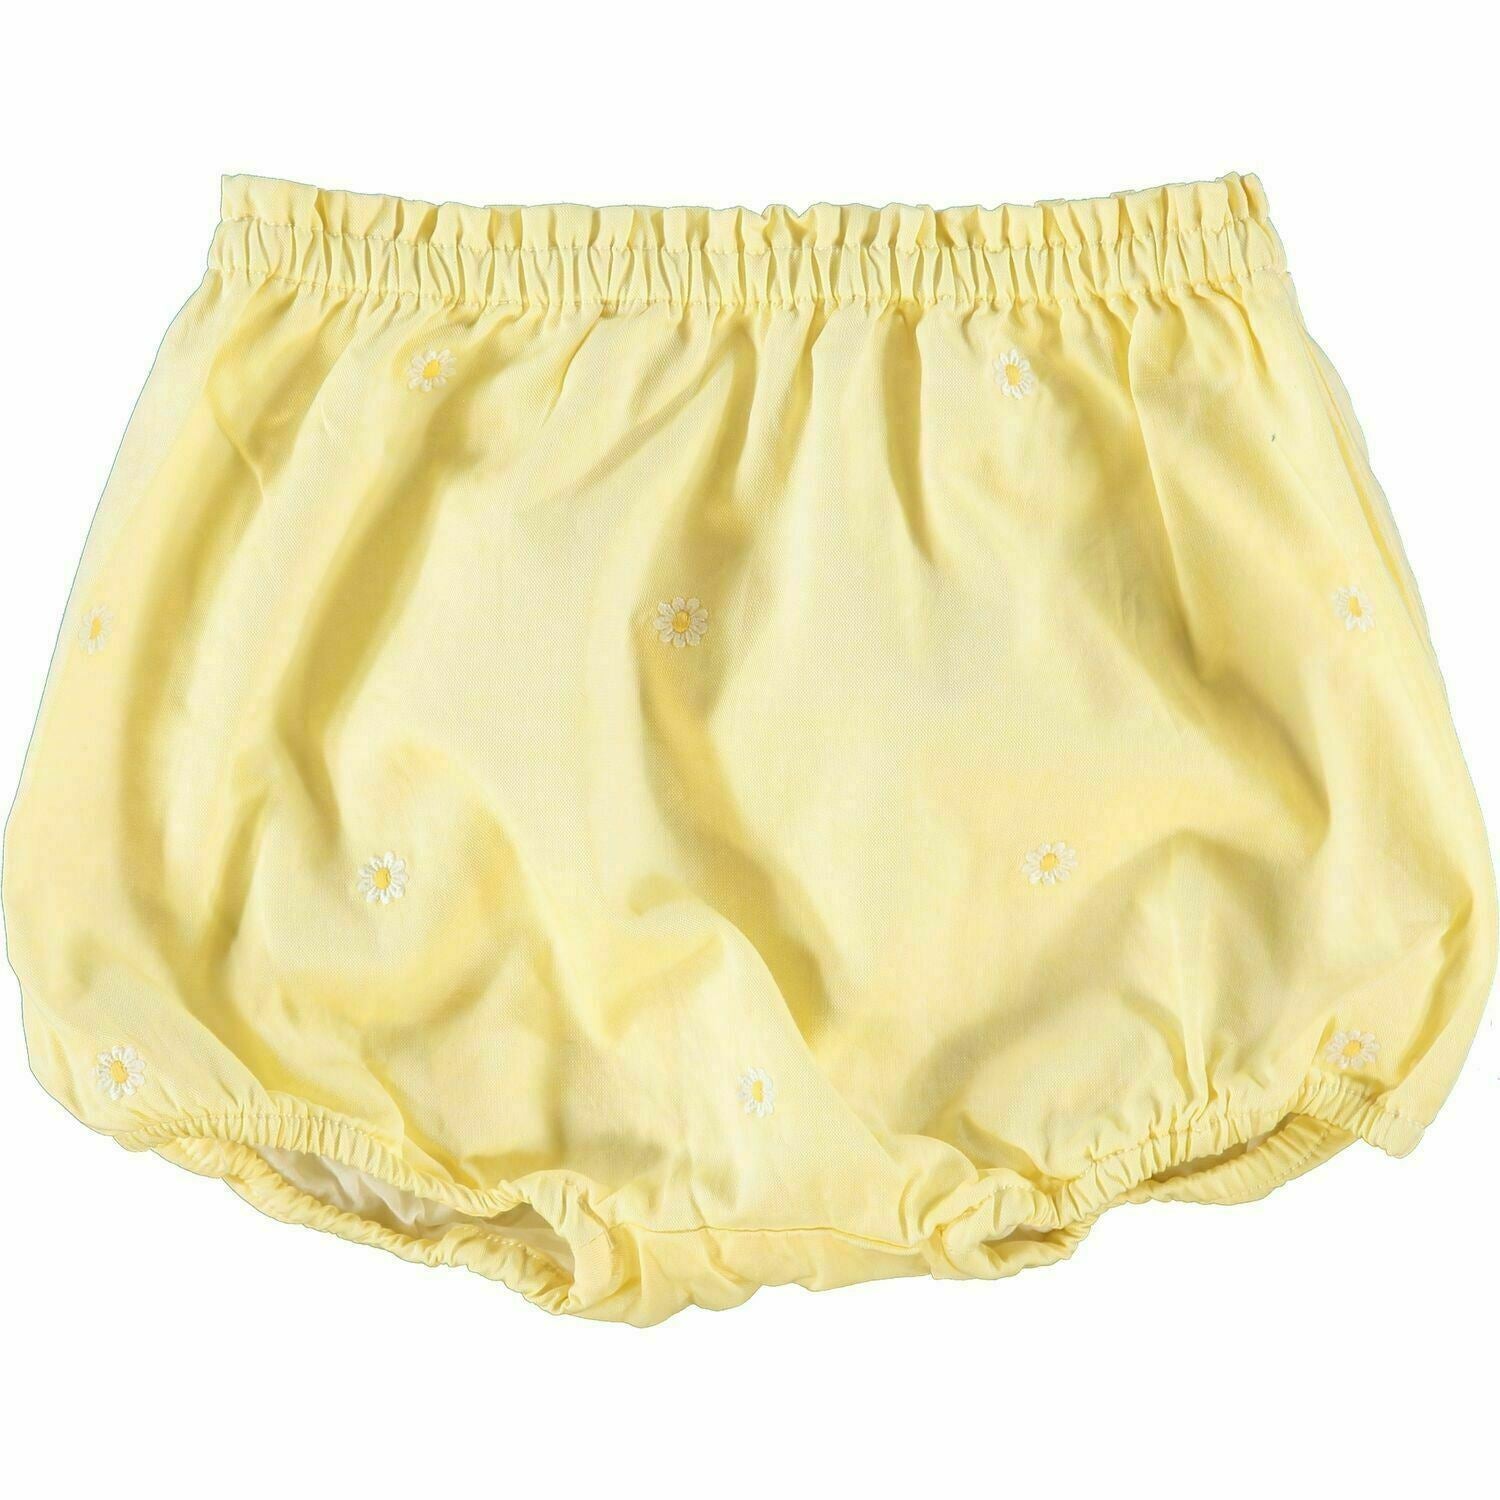 RALPH LAUREN Baby Girls' Yellow Daisy Shorts, size 18 months